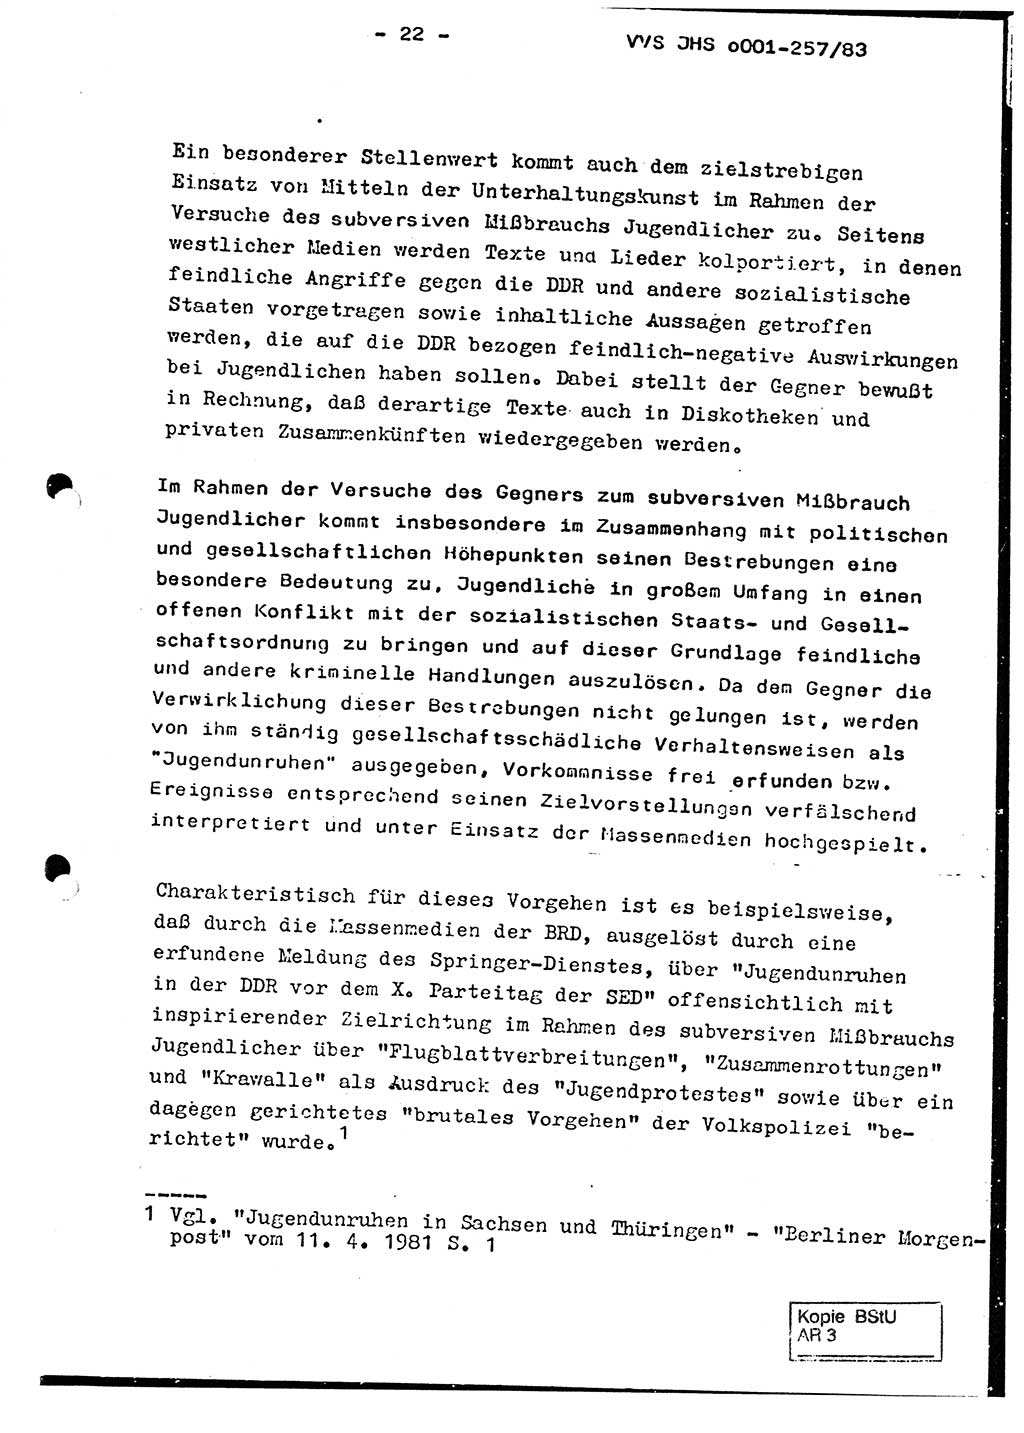 Dissertation, Oberst Helmut Lubas (BV Mdg.), Oberstleutnant Manfred Eschberger (HA IX), Oberleutnant Hans-Jürgen Ludwig (JHS), Ministerium für Staatssicherheit (MfS) [Deutsche Demokratische Republik (DDR)], Juristische Hochschule (JHS), Vertrauliche Verschlußsache (VVS) o001-257/83, Potsdam 1983, Seite 22 (Diss. MfS DDR JHS VVS o001-257/83 1983, S. 22)